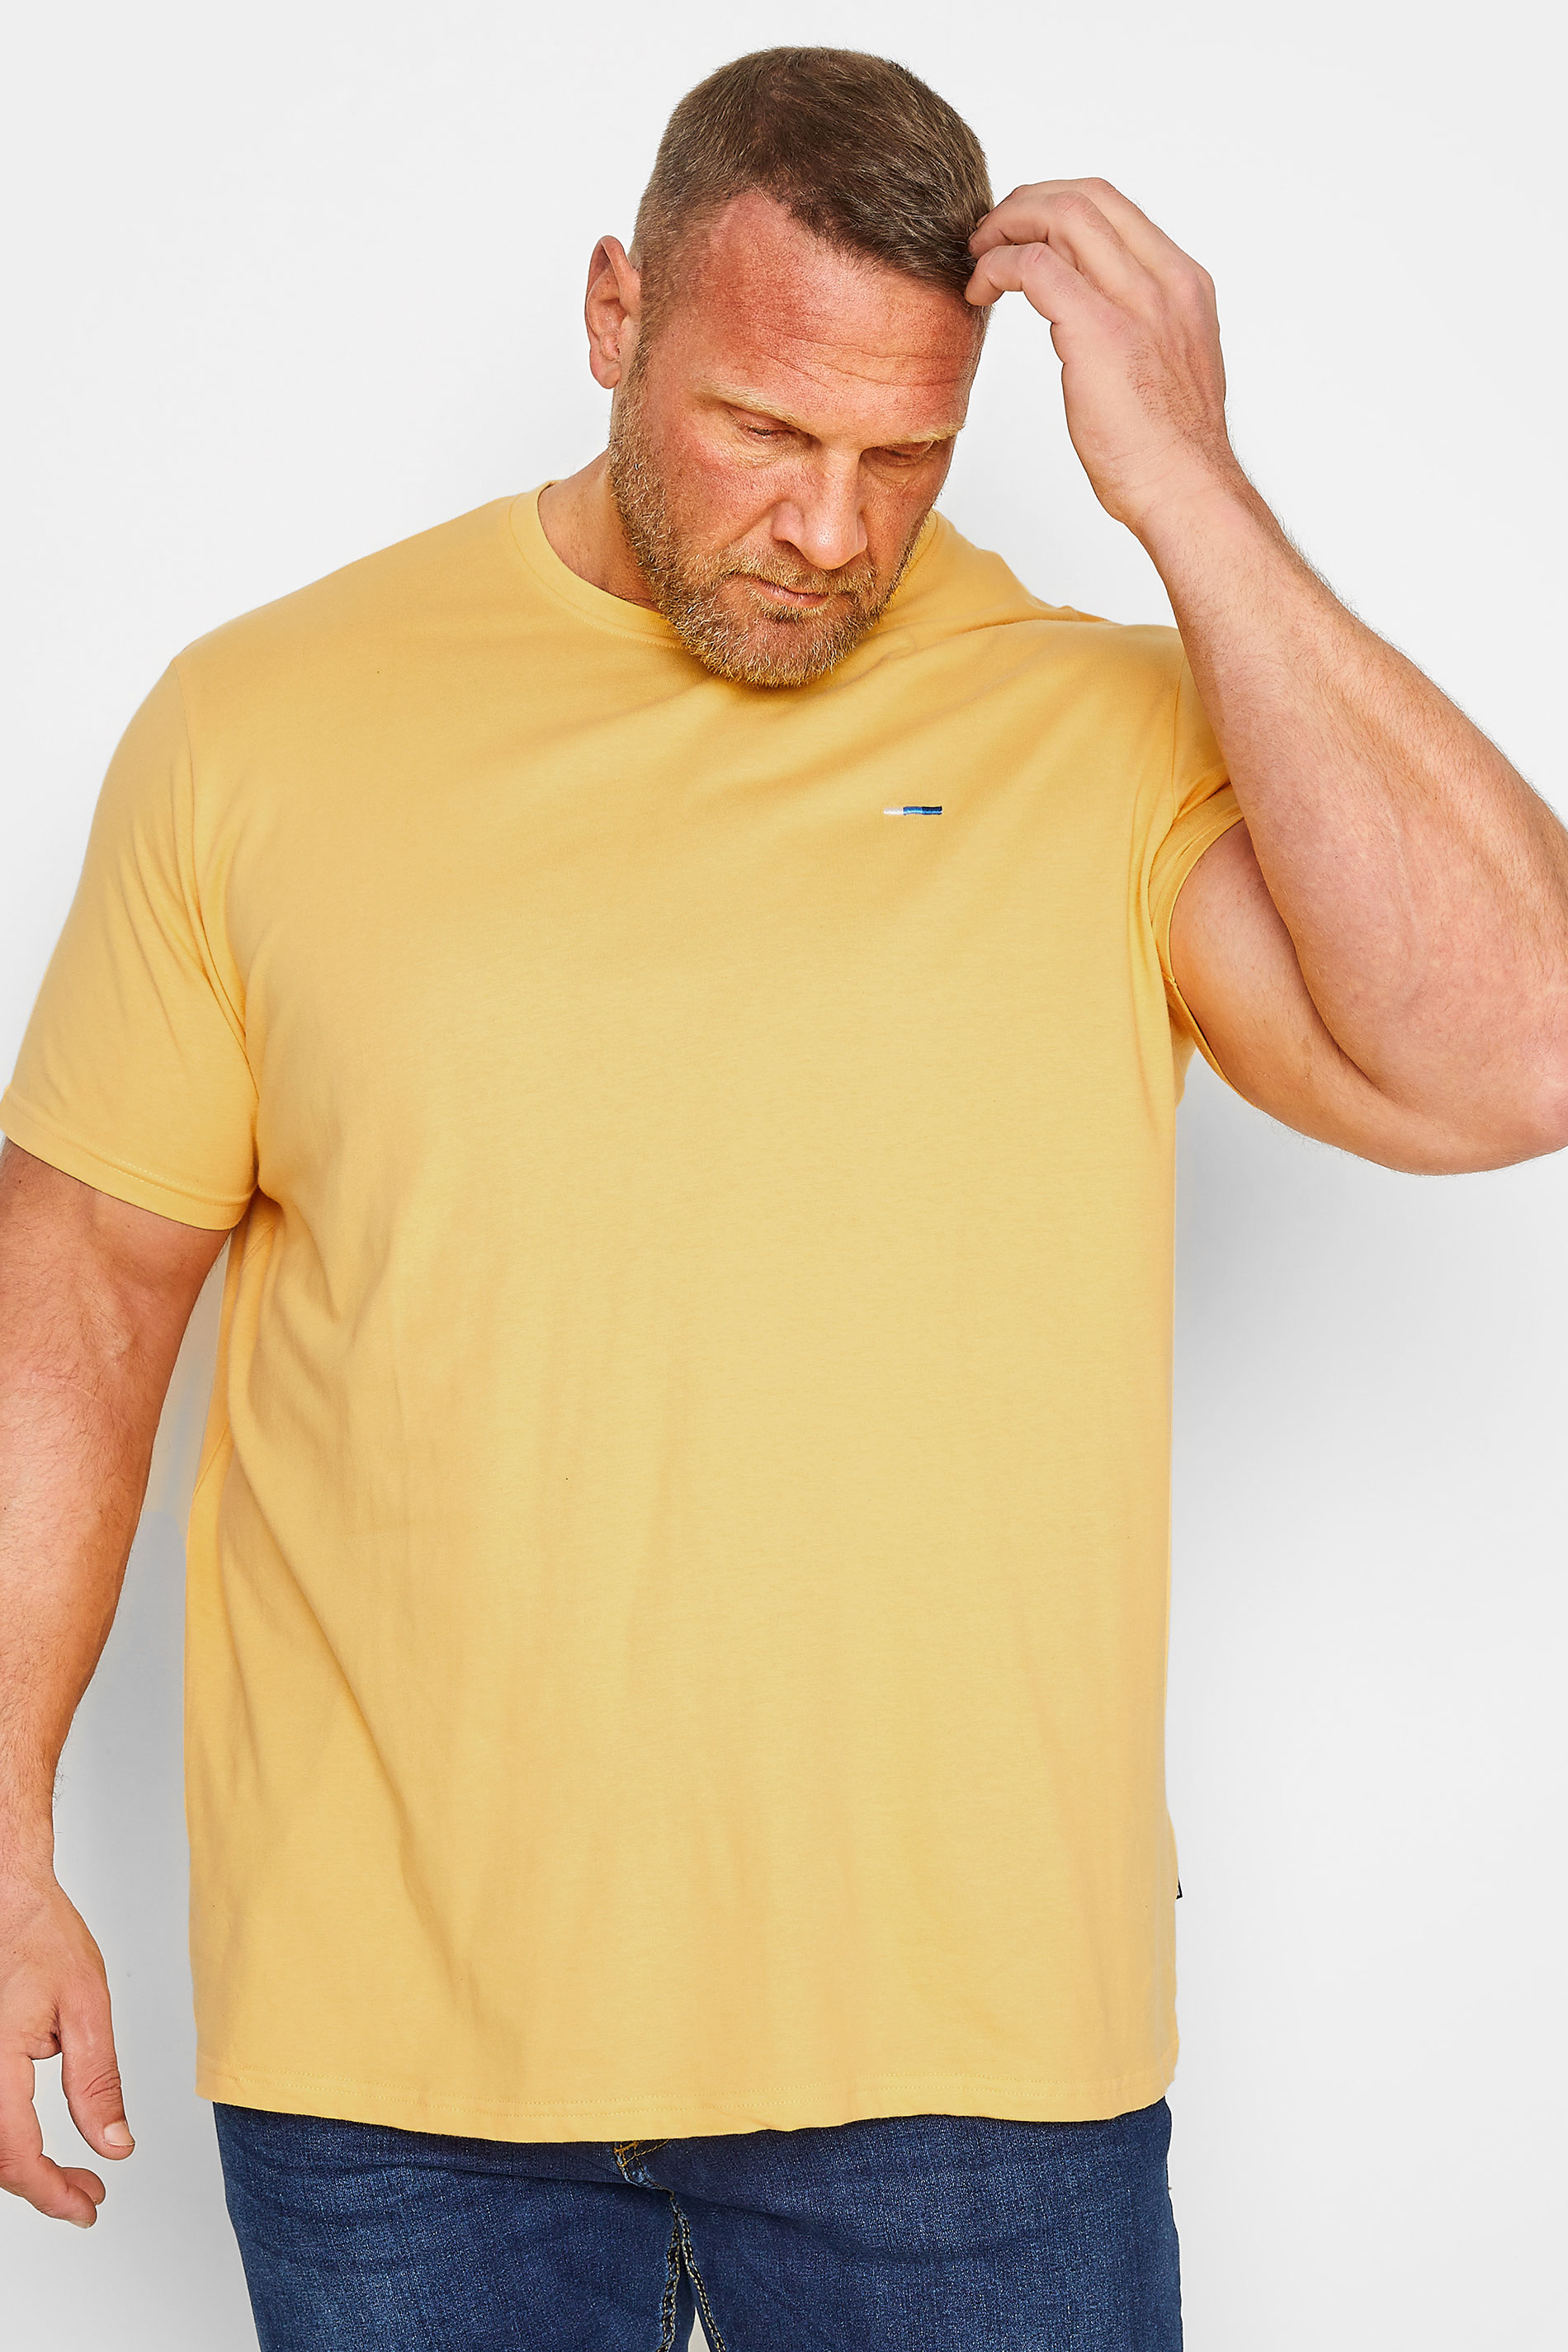 BadRhino Big & Tall Yellow Core T-Shirt | BadRhino 1